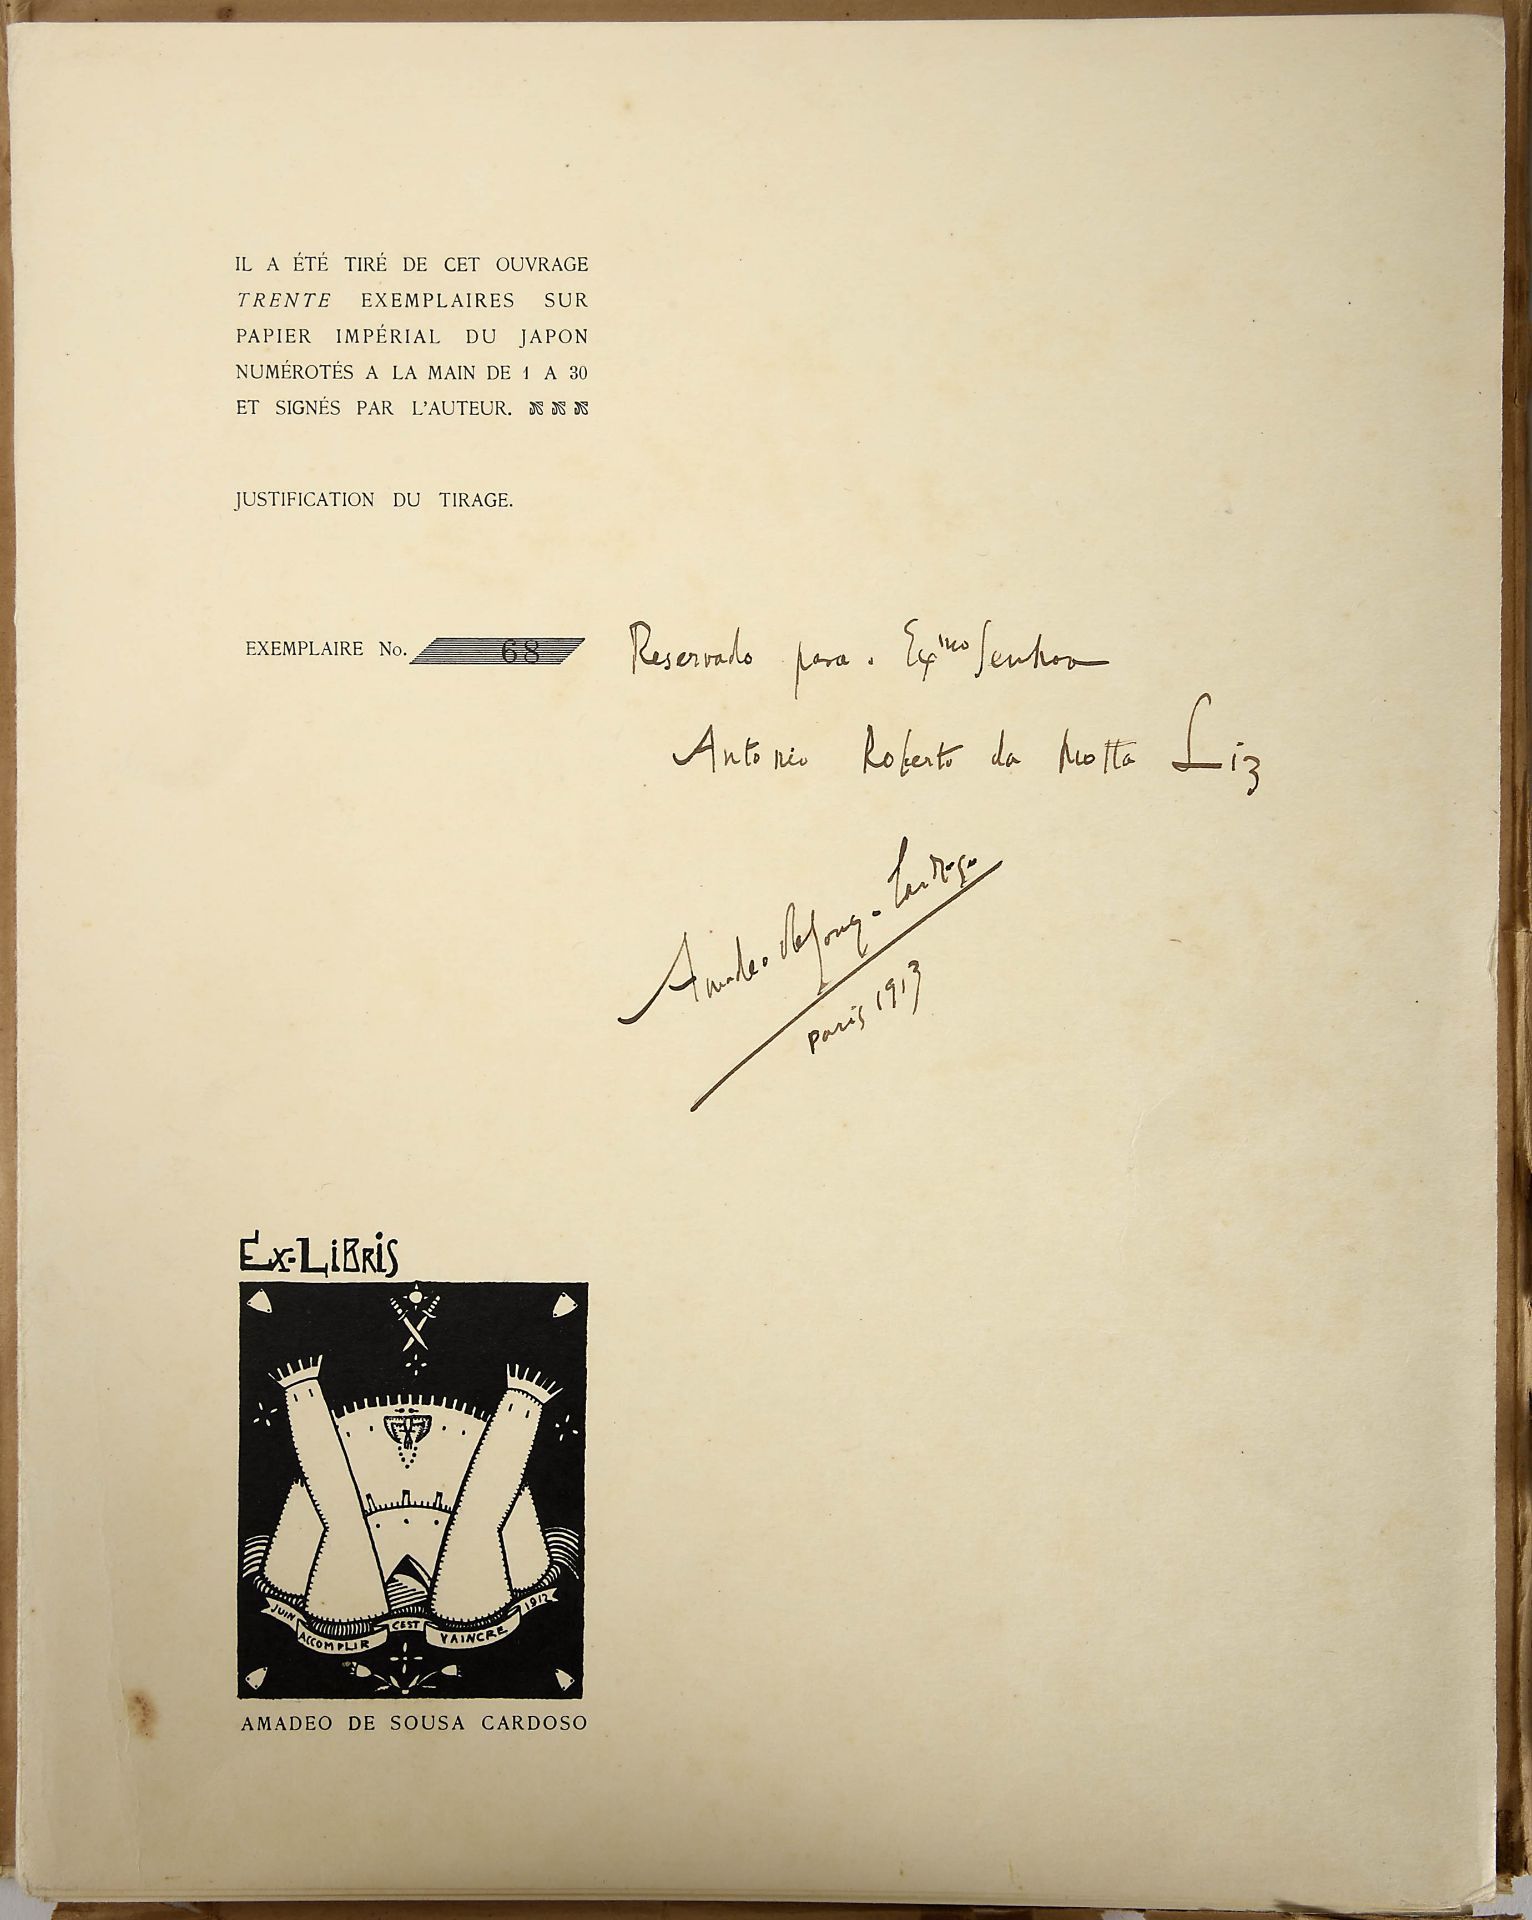 CARDOSO, Amadeo de Sousa.- XX dessins.- Paris: edição do autor, 1912.- [2, 1] f.: 20 estampas; 31 cm - Bild 2 aus 4